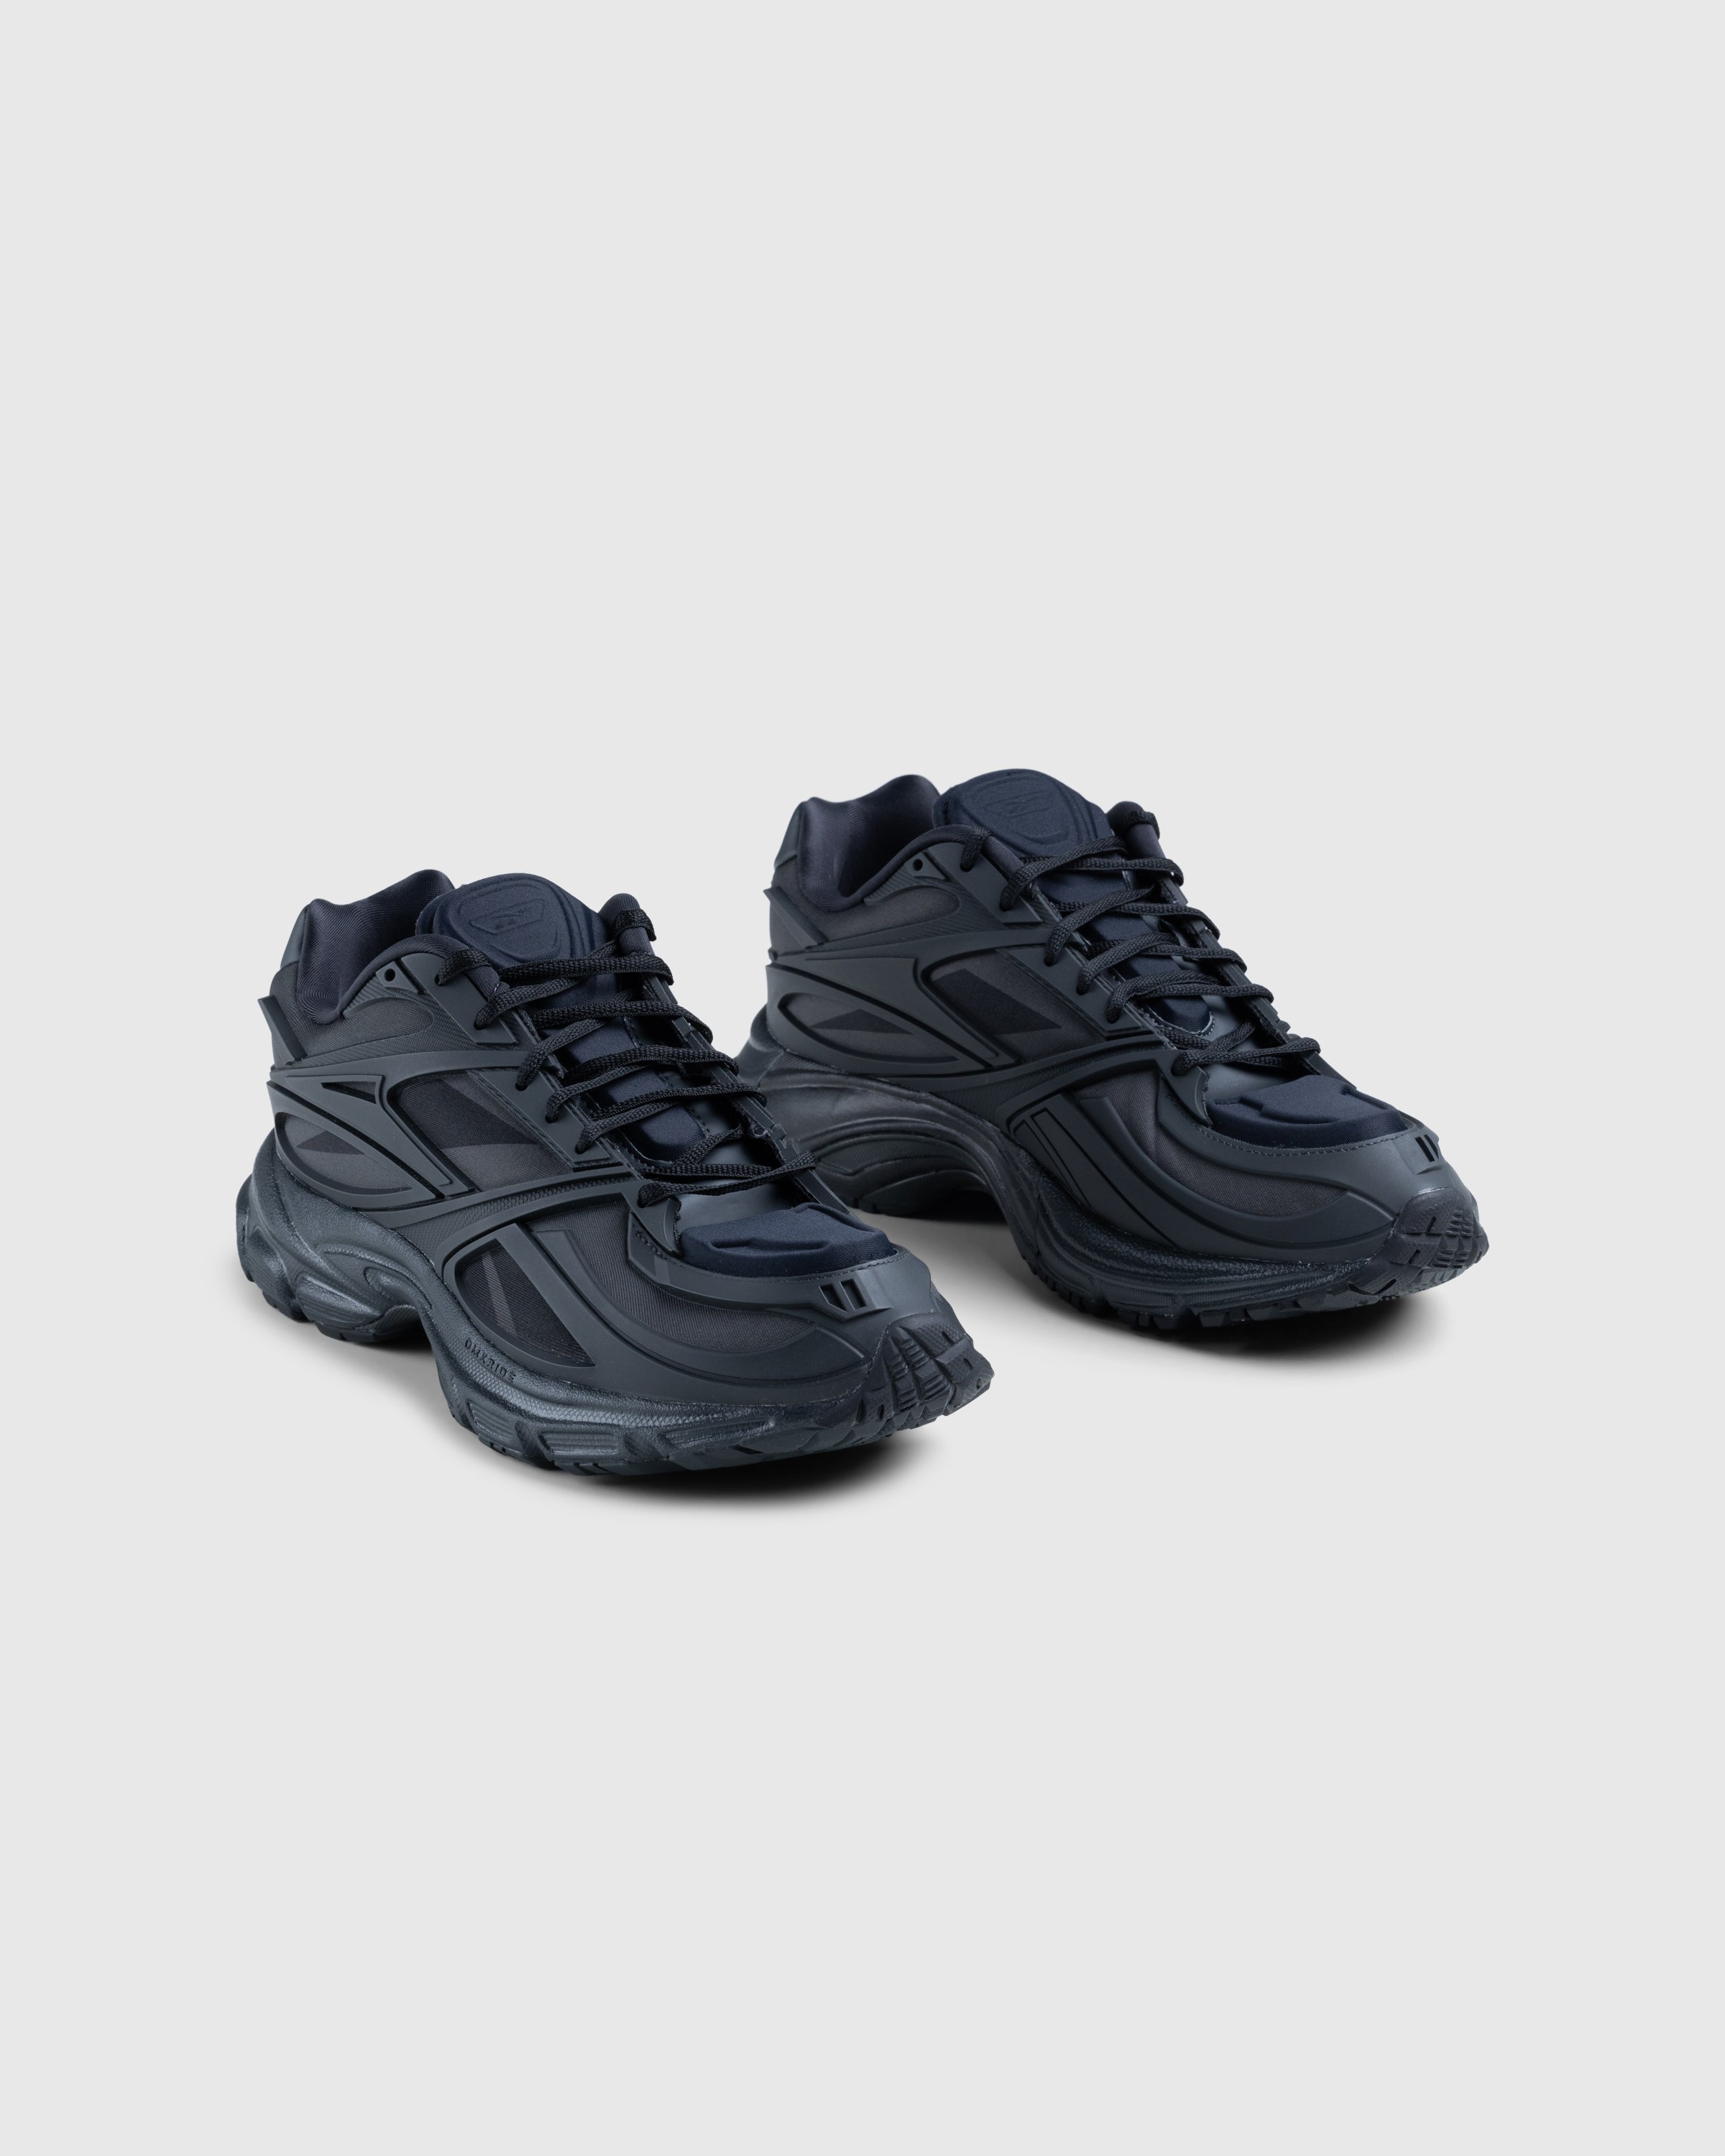 Reebok - Premier Road Black - Footwear - Black - Image 3